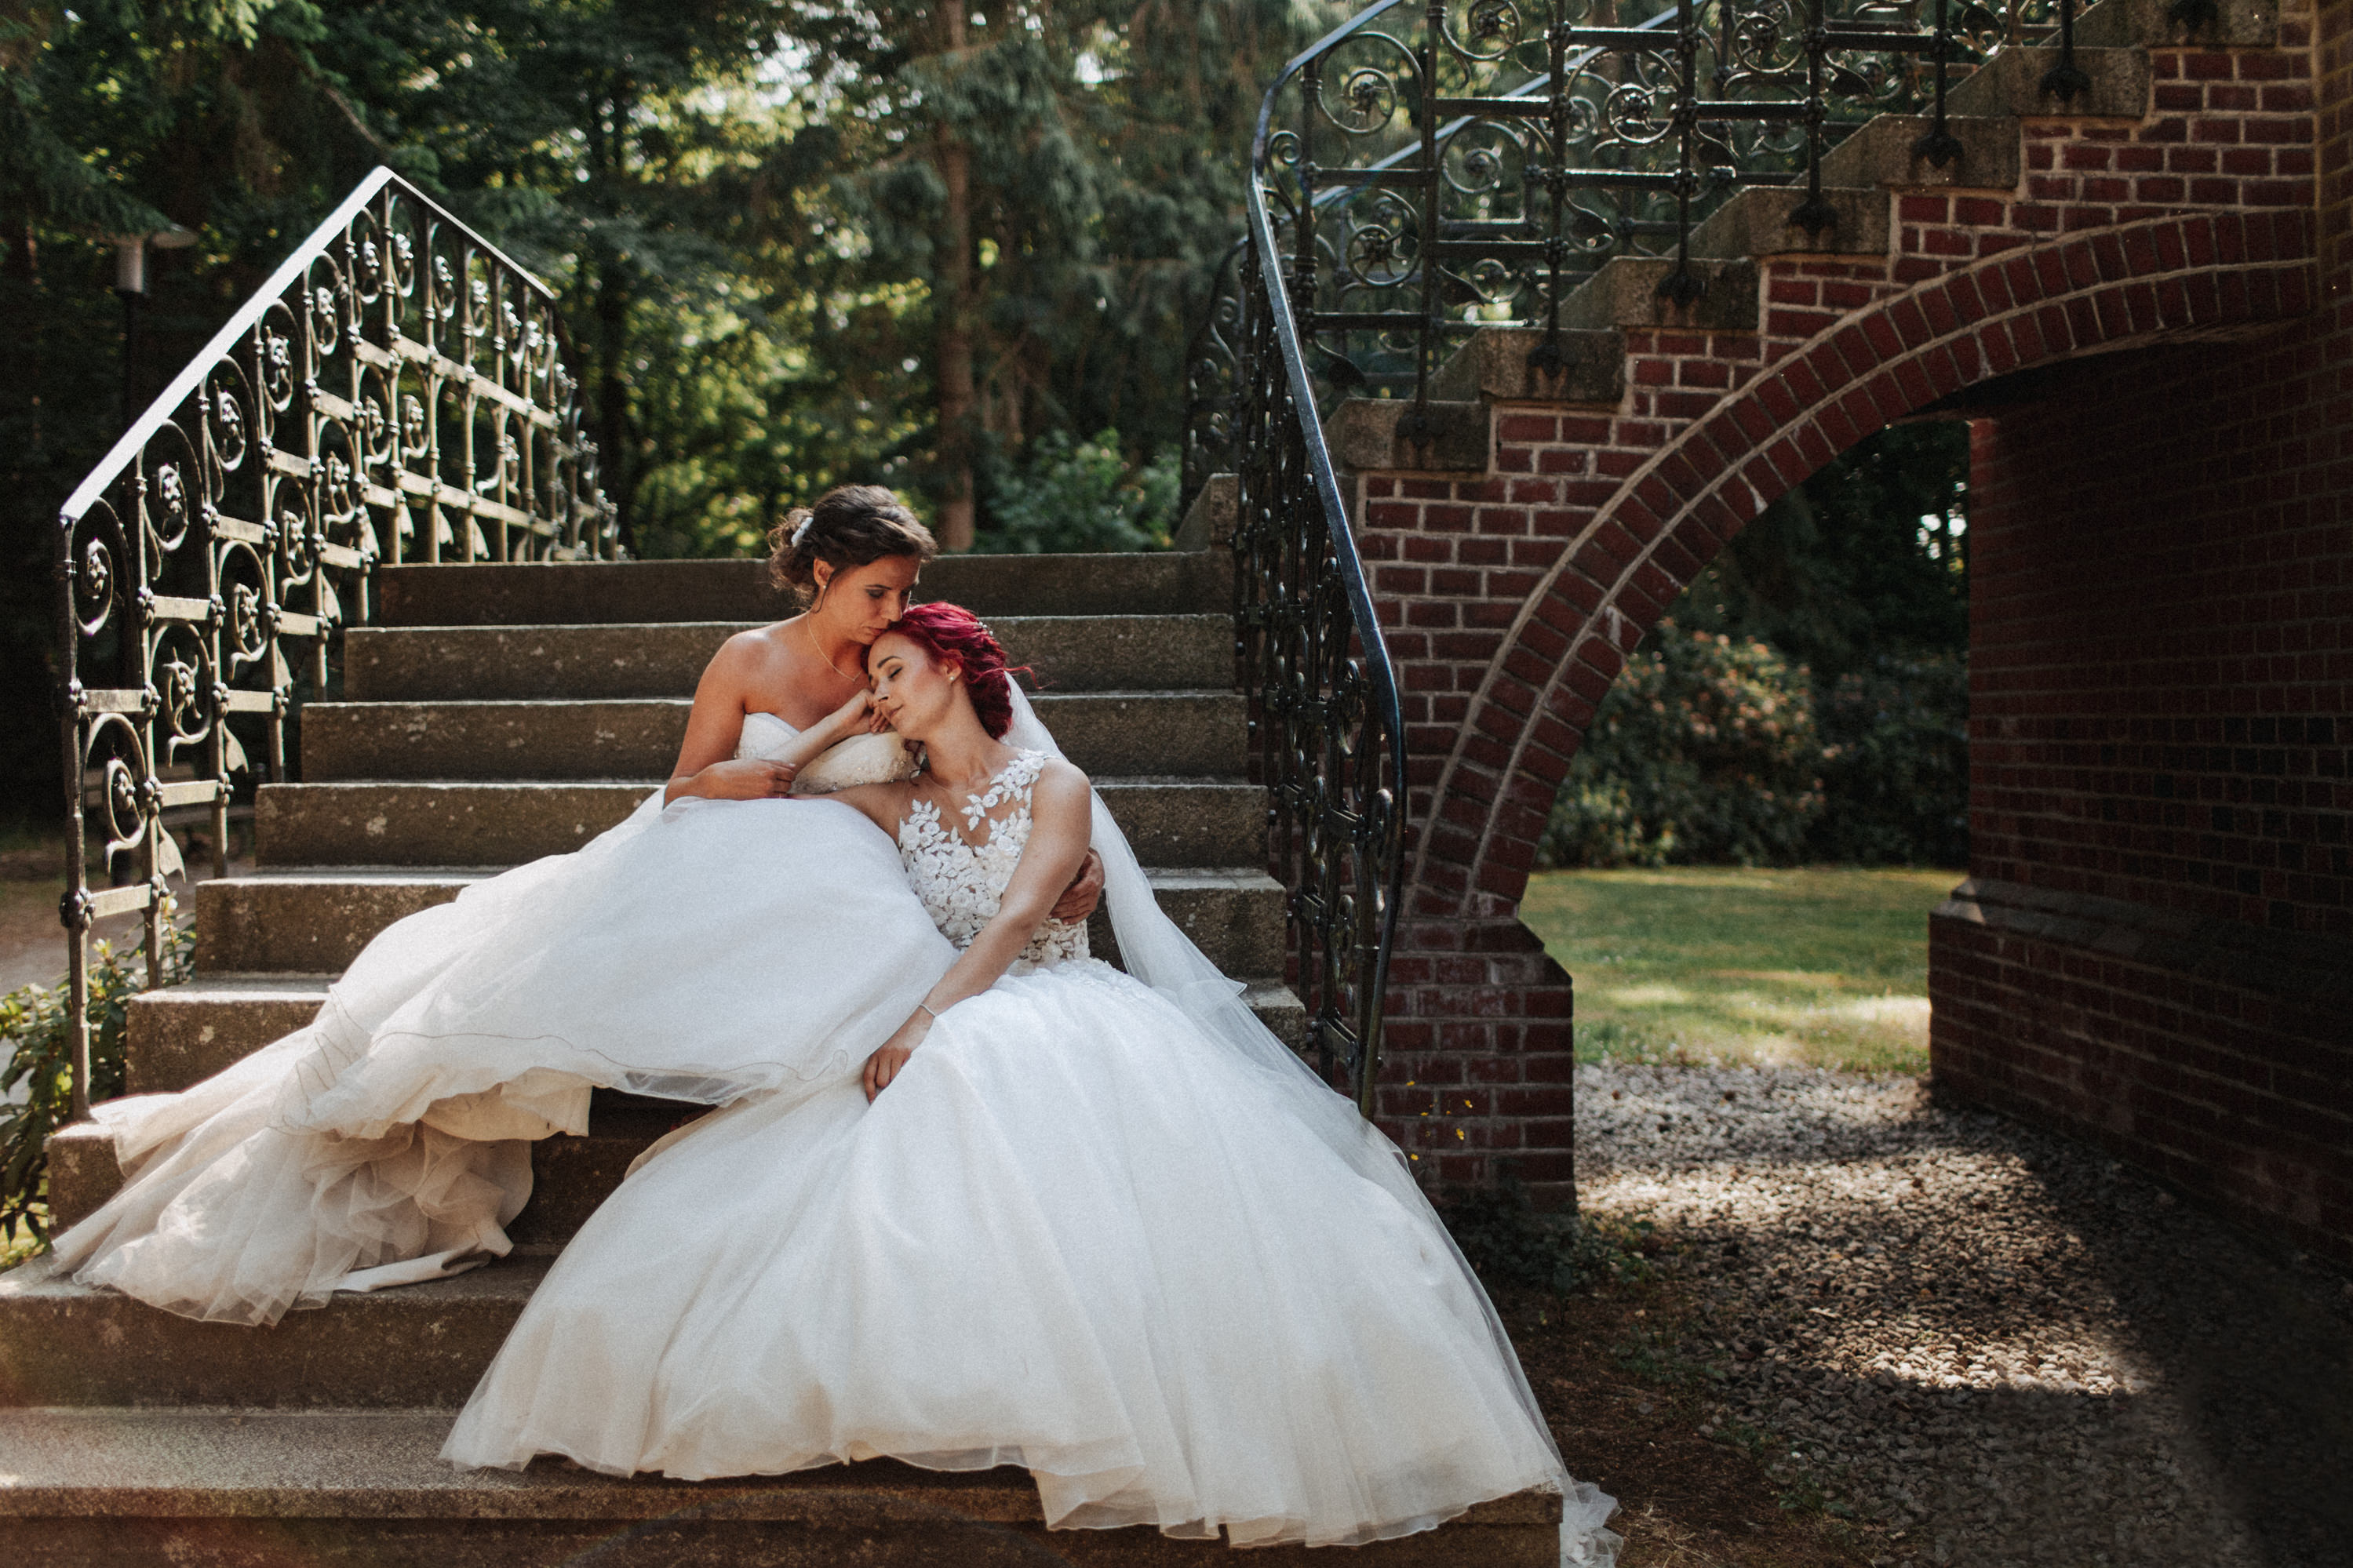 Dieses Foto ist Teil einer Hochzeitsreportage aus dem Juni 2018. Geheiratet haben zwei Frauen, die bei einer freien Trauung bei Sonnenschein getraut wurden. Fotografiert wurde diese Hochzeitsreportage von den Hochzeitsfotografen Tom und Lia aus Potsdam.